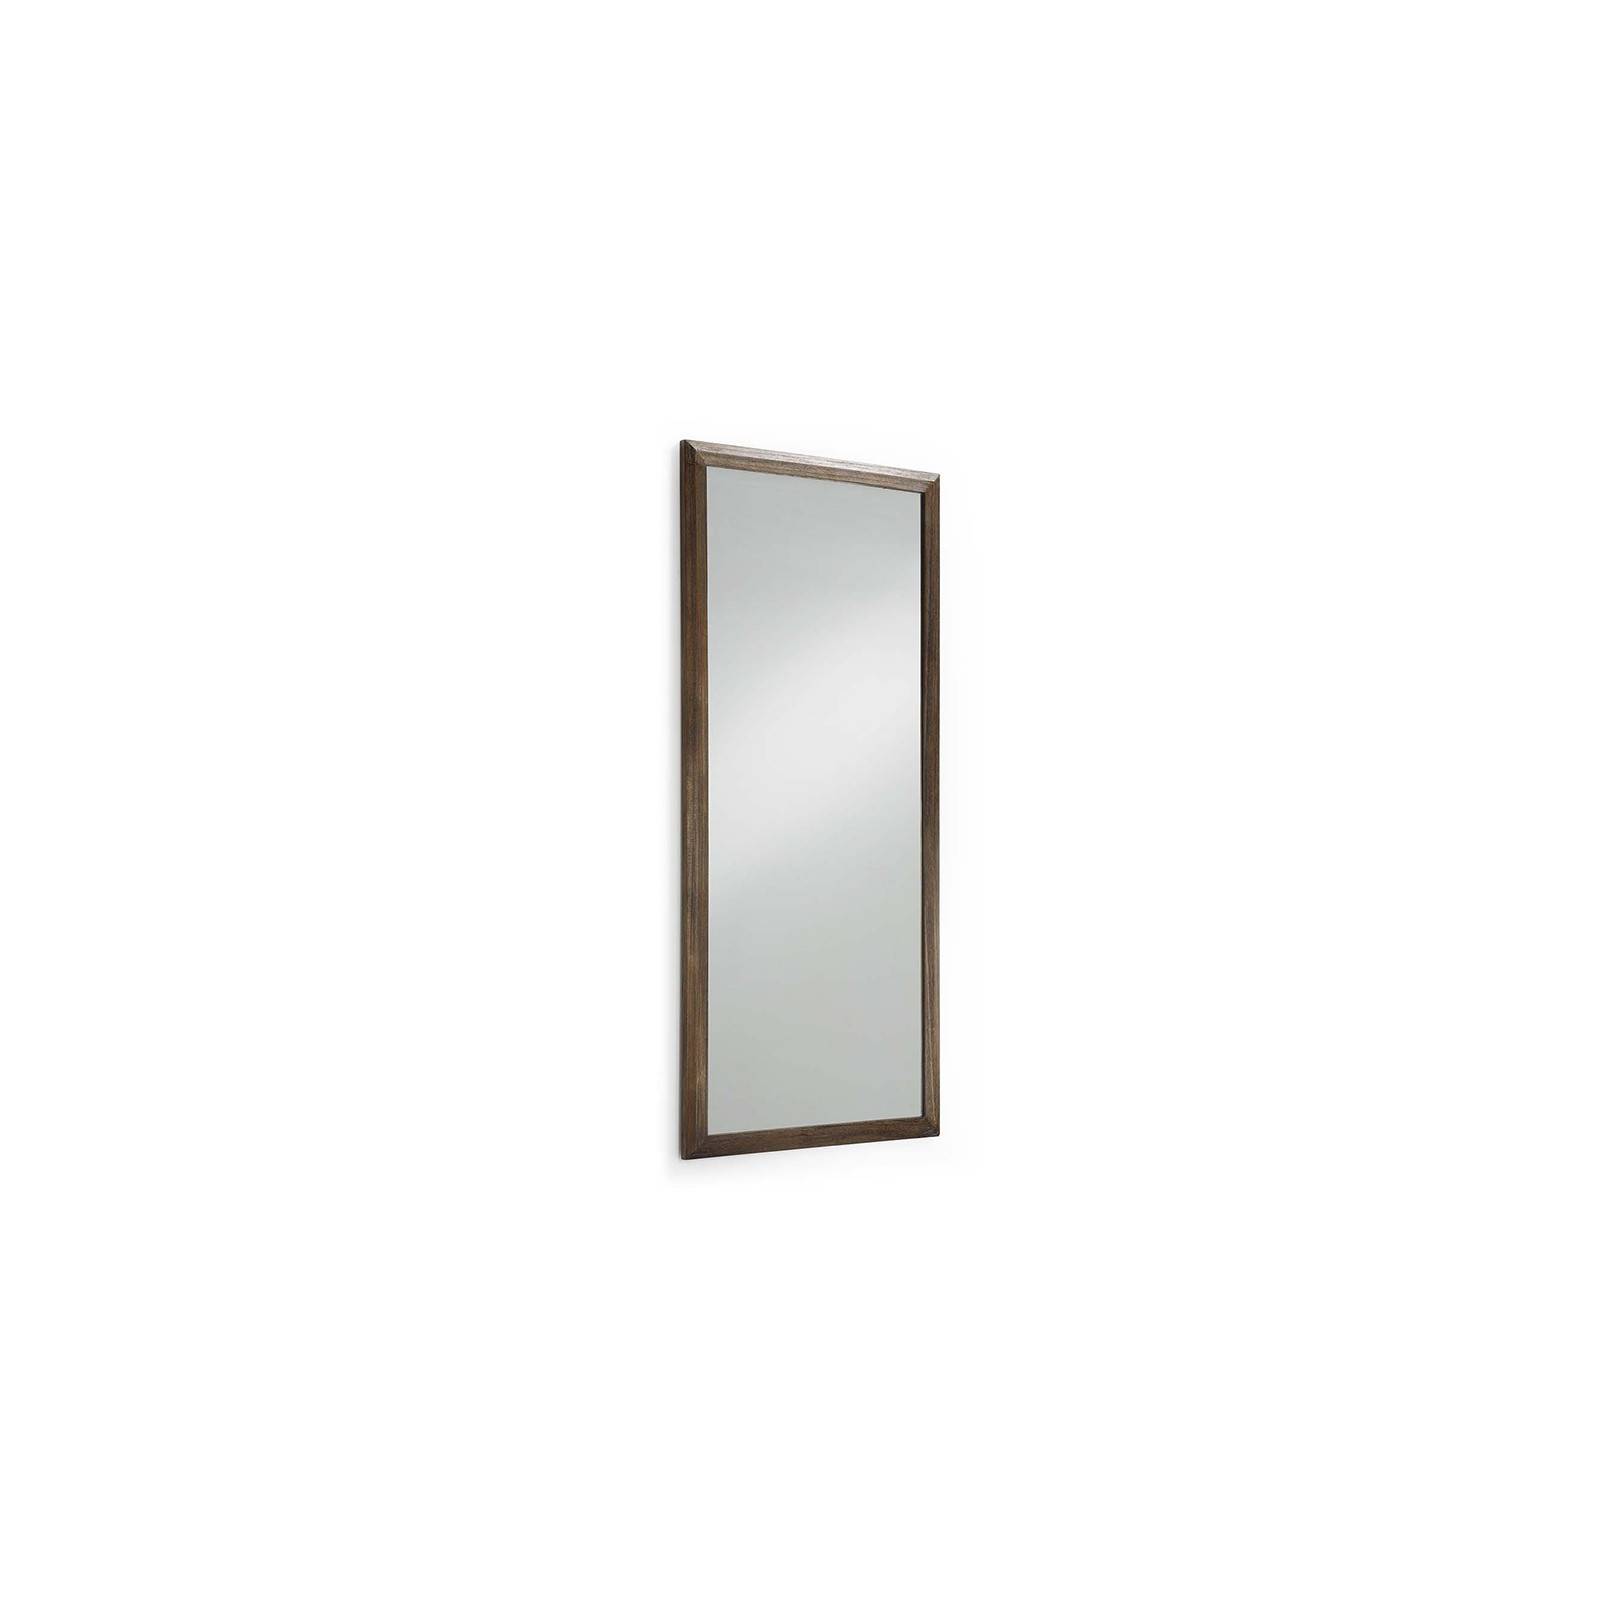 Miroir rectangulaire au style ethnique de la collection Terranova Mindi